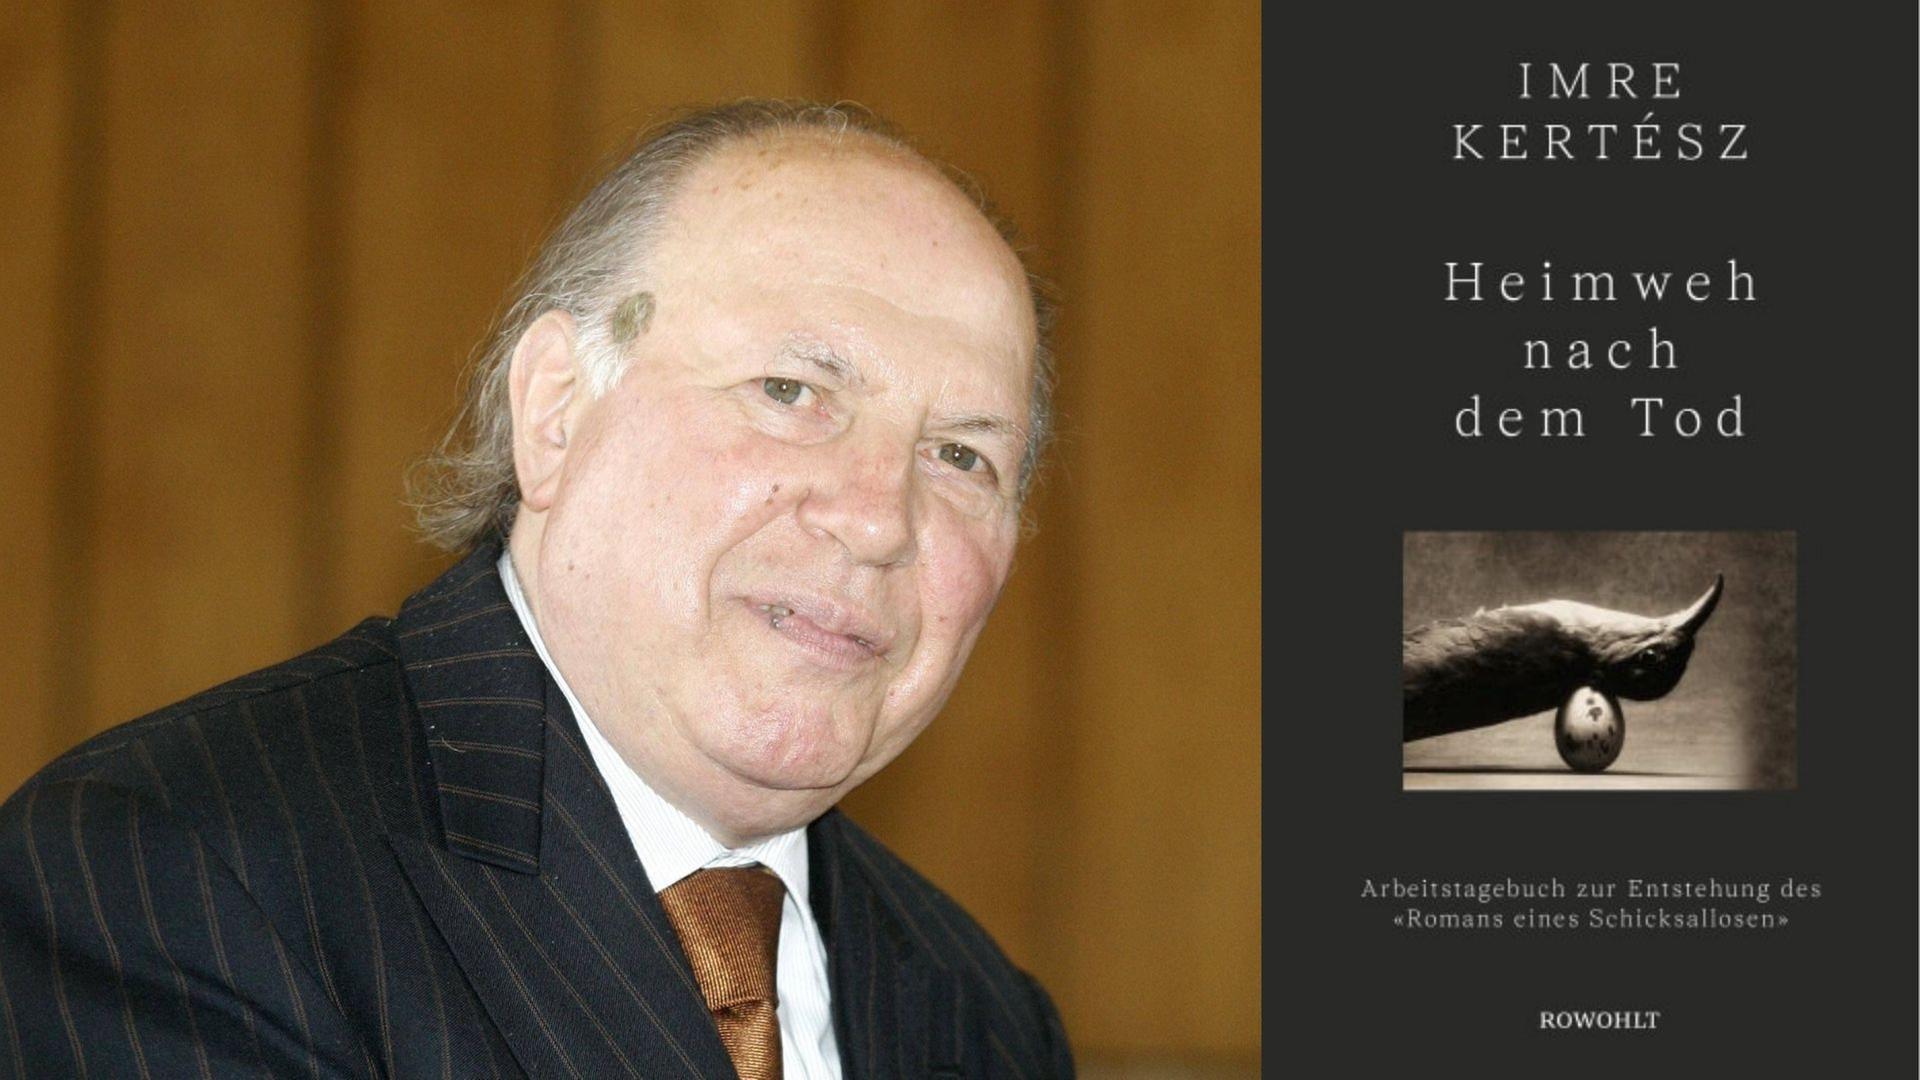 Imre Kertész: "Heimweh nach dem Tod. Arbeitstagebuch"
Zu sehen sind der Autor und das Buchcover.